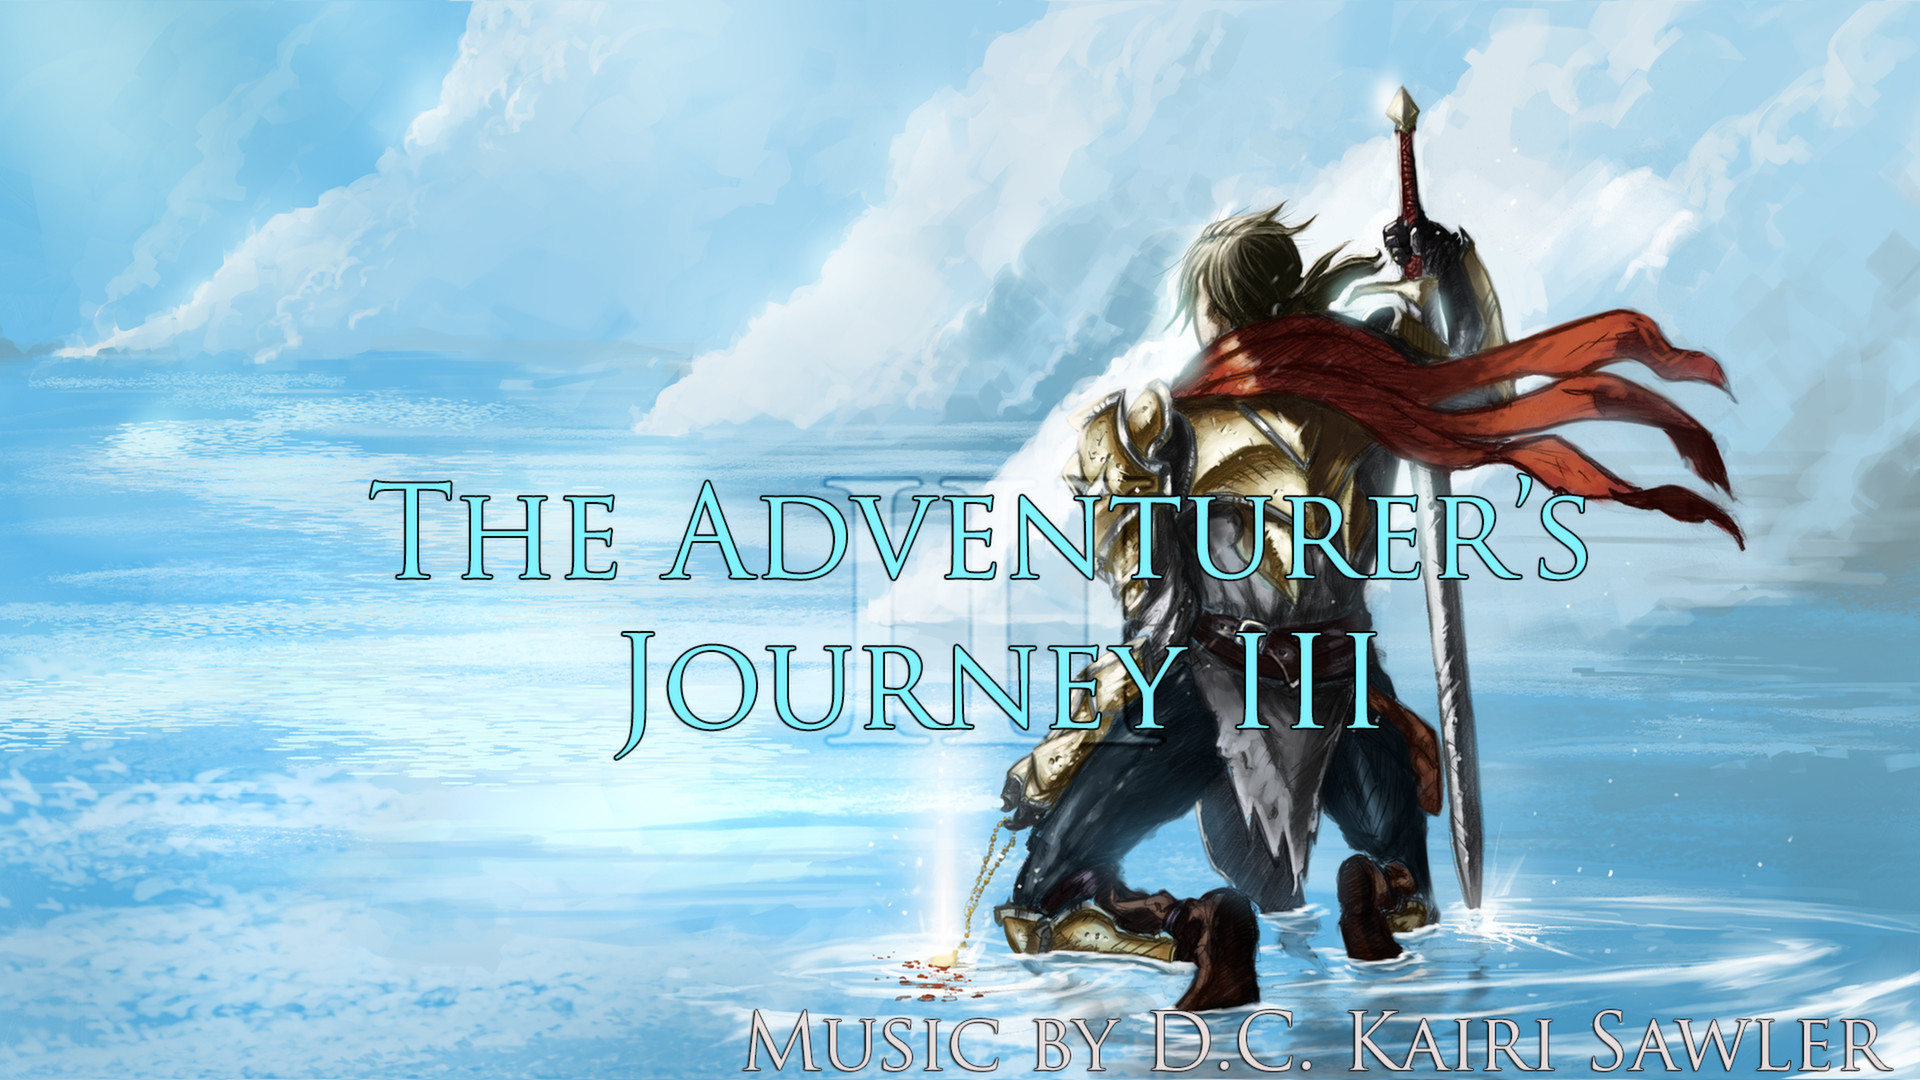 RPG Maker VX Ace - The Adventurer's Journey III DLC Steam CD Key [USD 4.51]